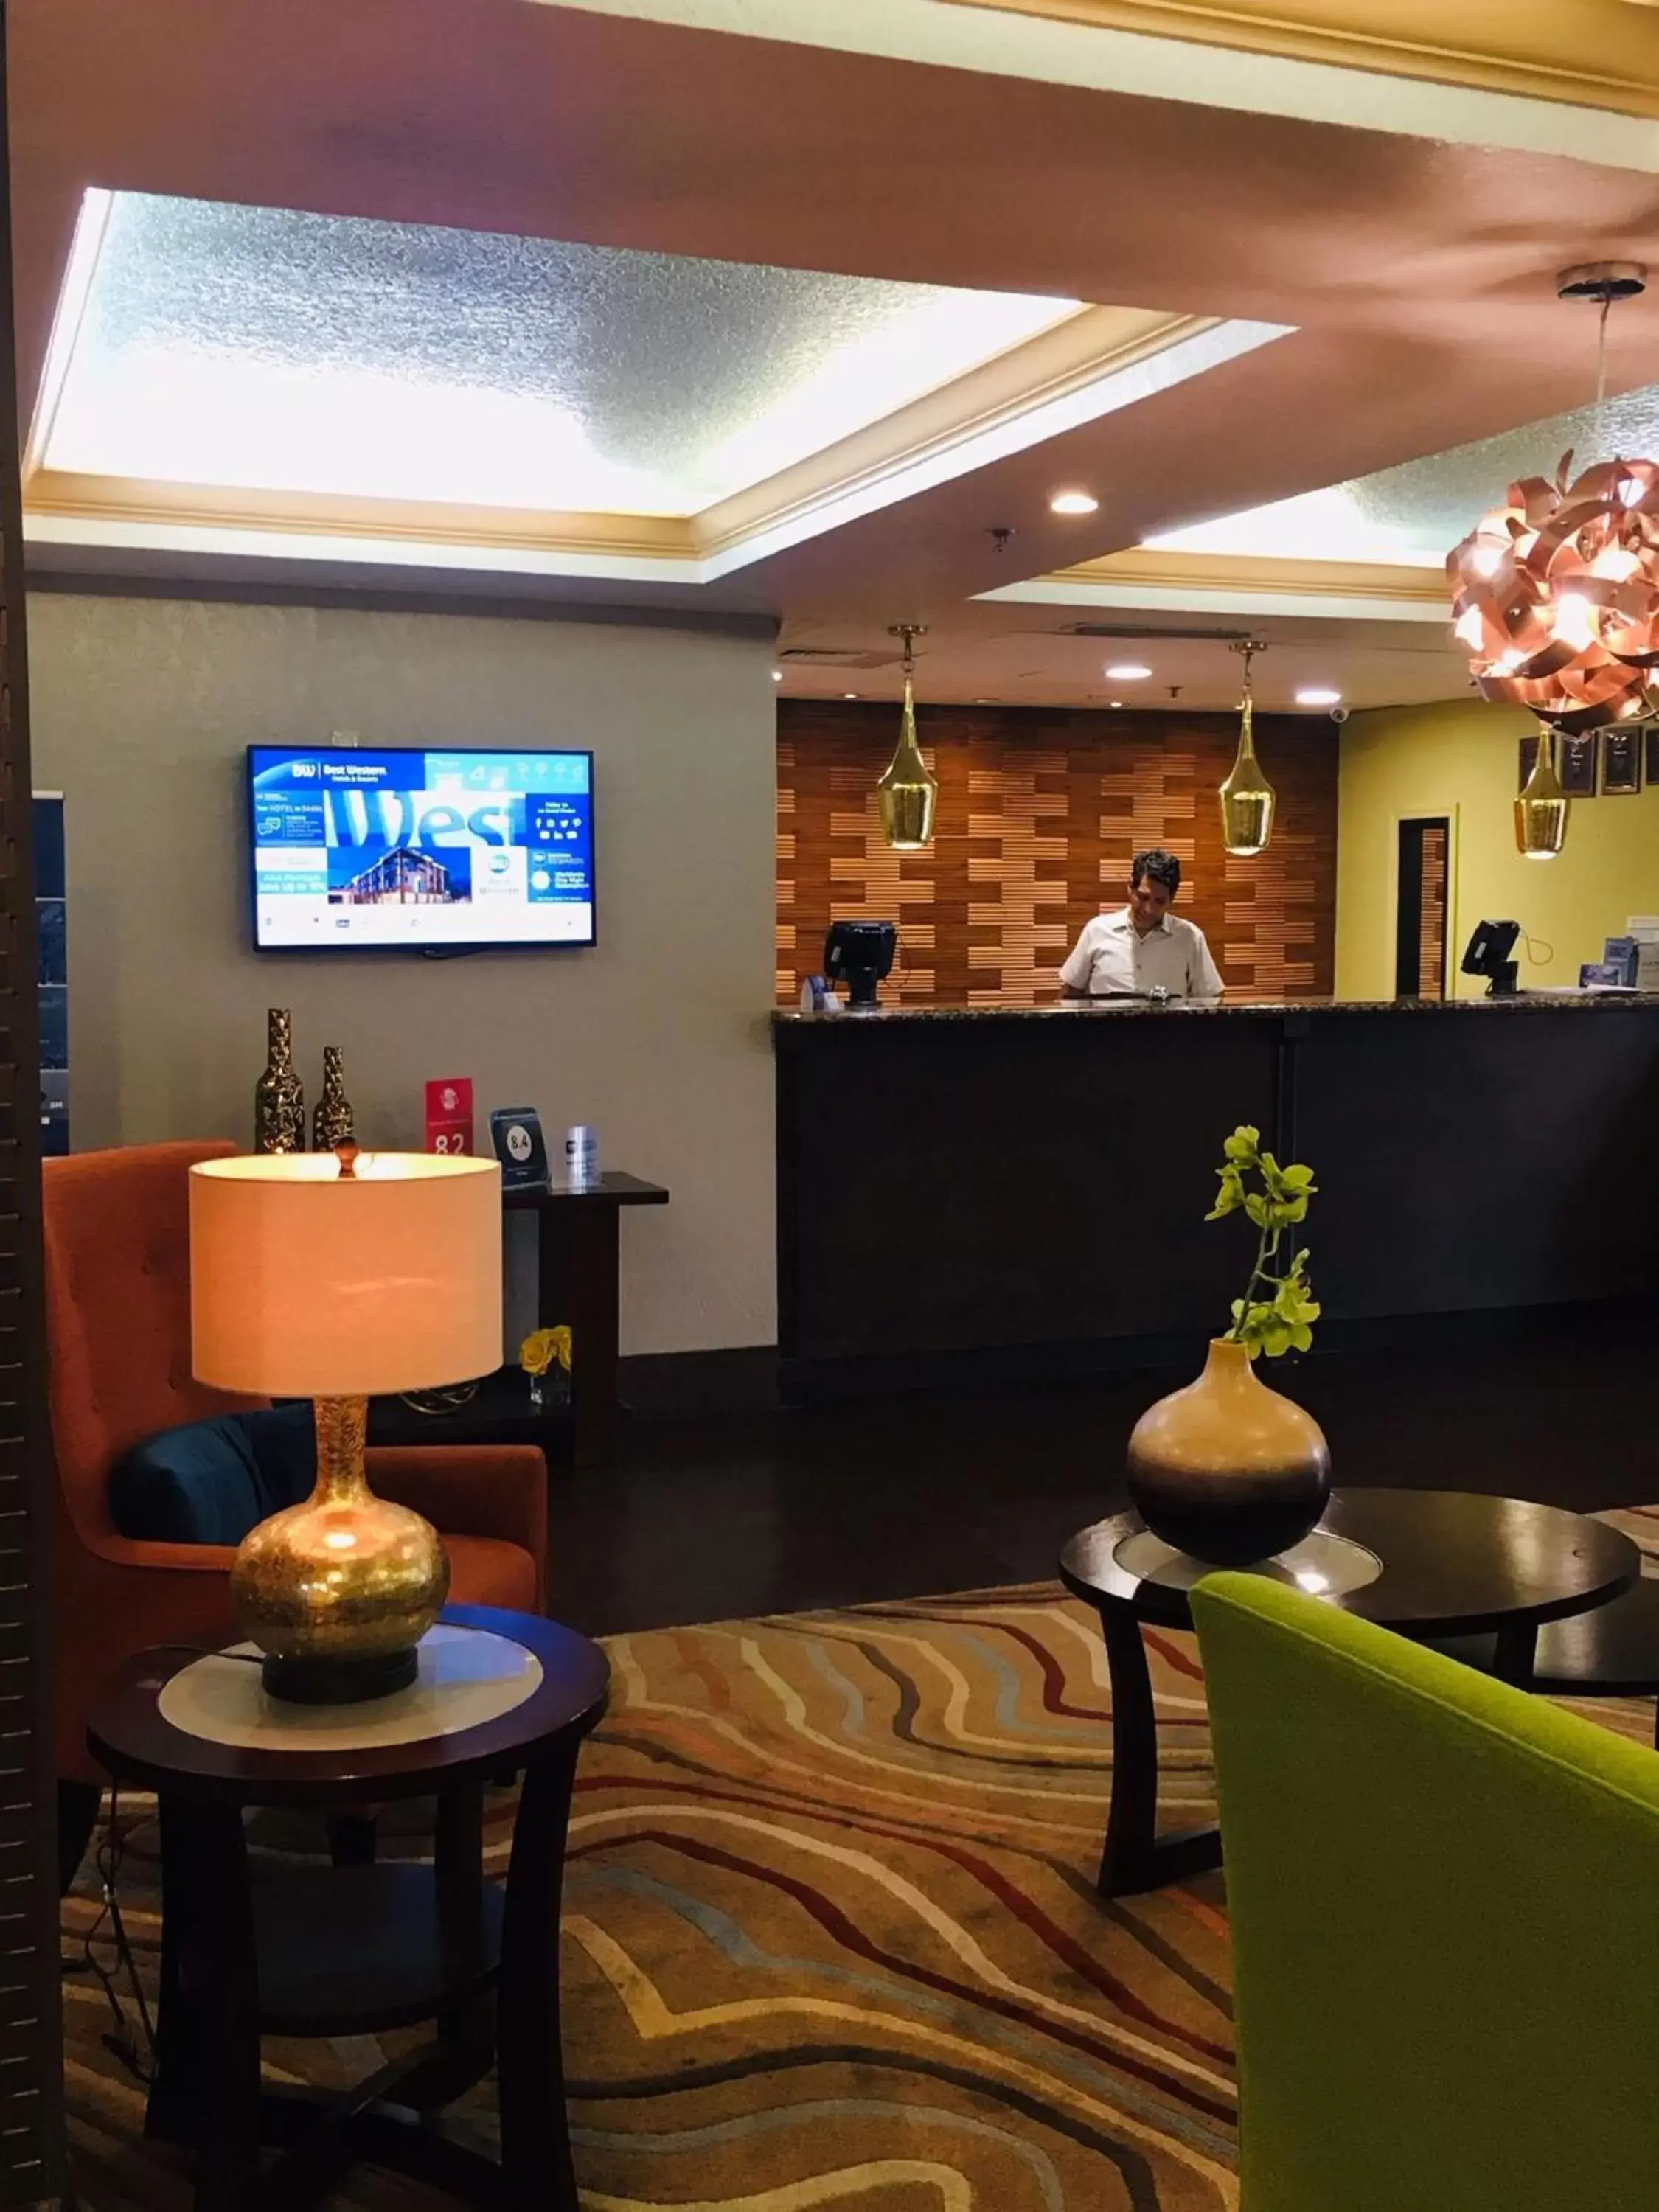 Lobby or reception, Lobby/Reception in Best Western Plus Universal Inn